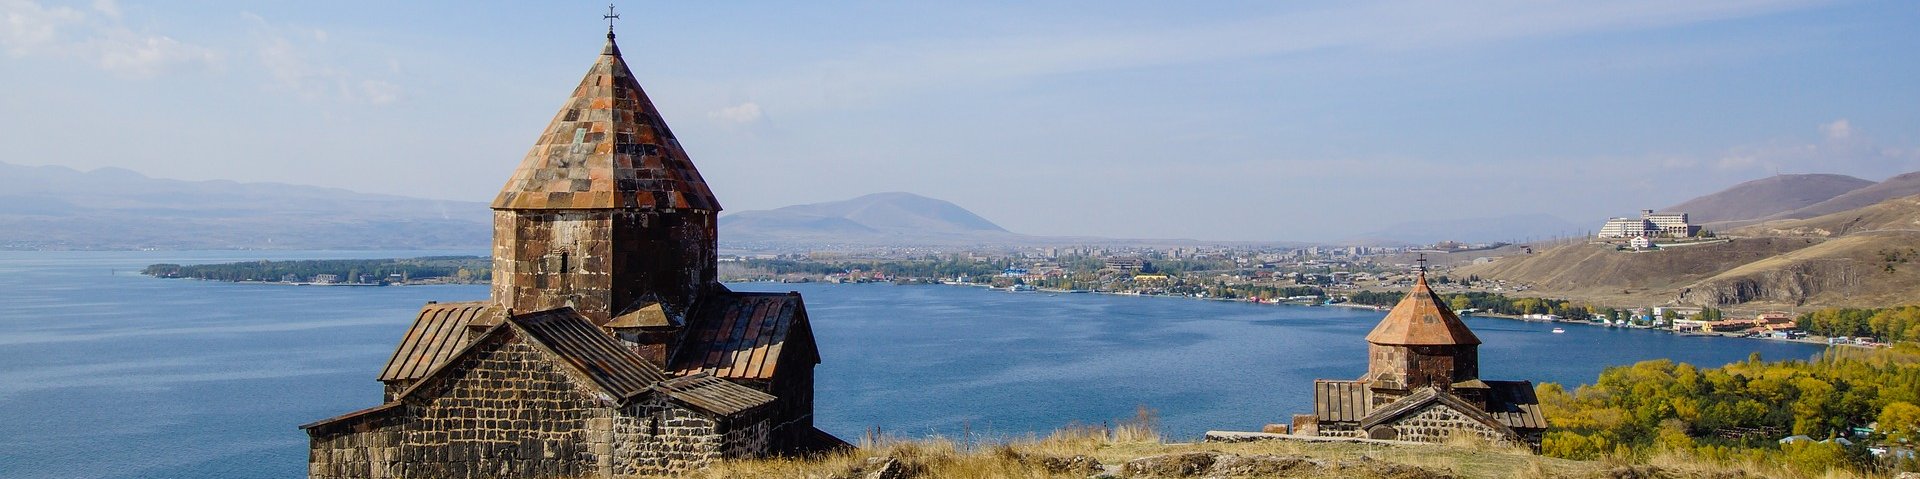 Sewanawank-Kloster in Armenien und im Hintergrund der Sewansee